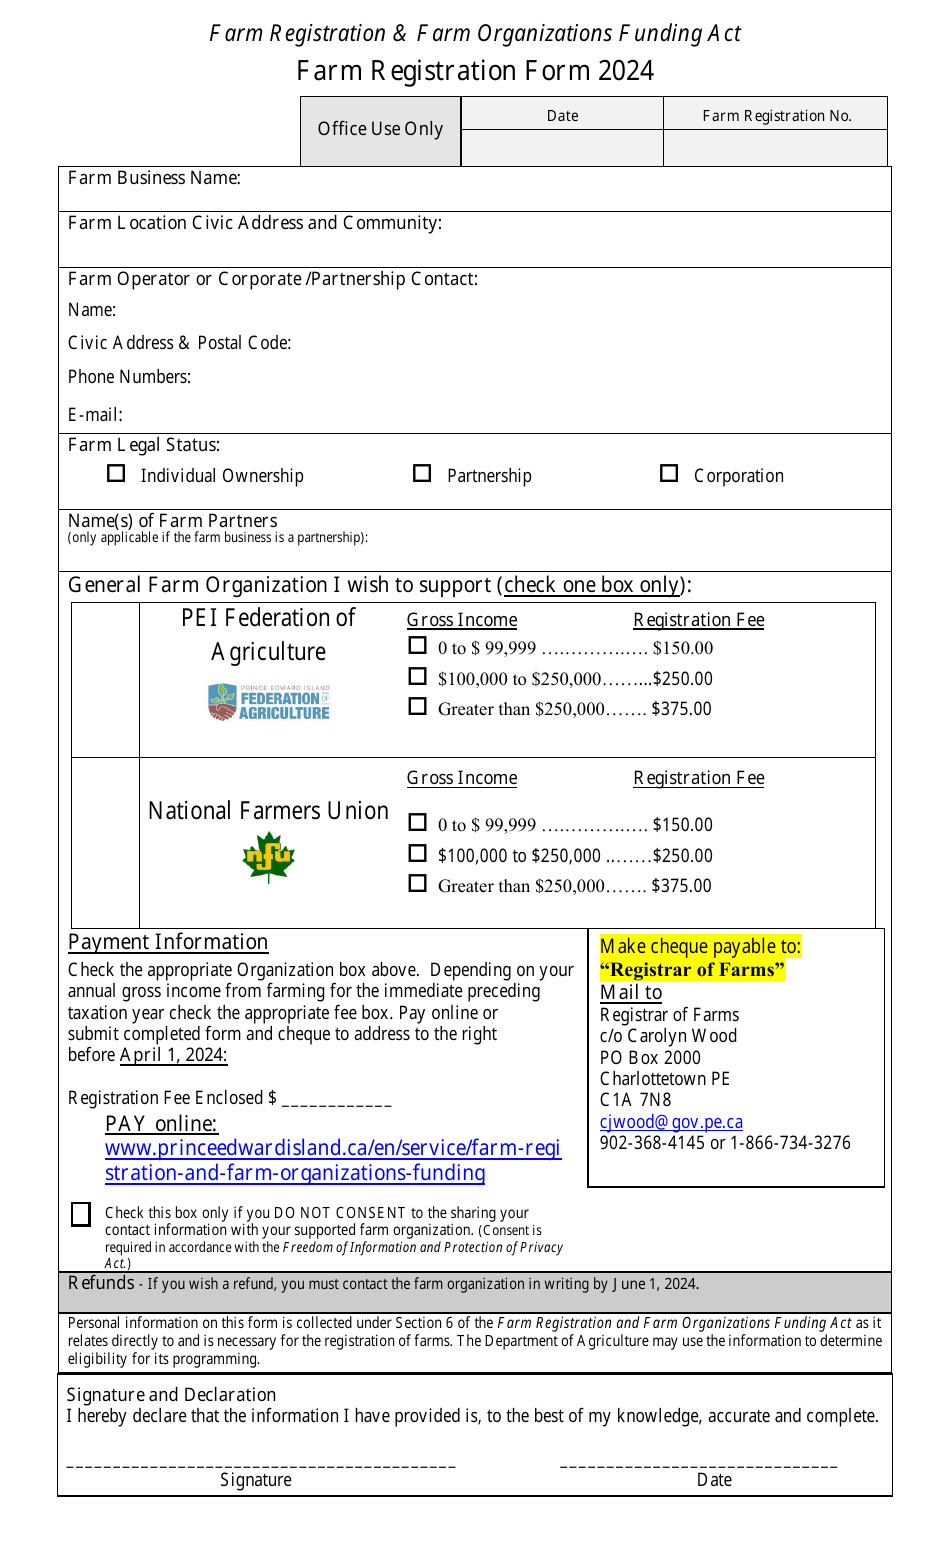 Farm Registration Form - Prince Edward Island, Canada, Page 1